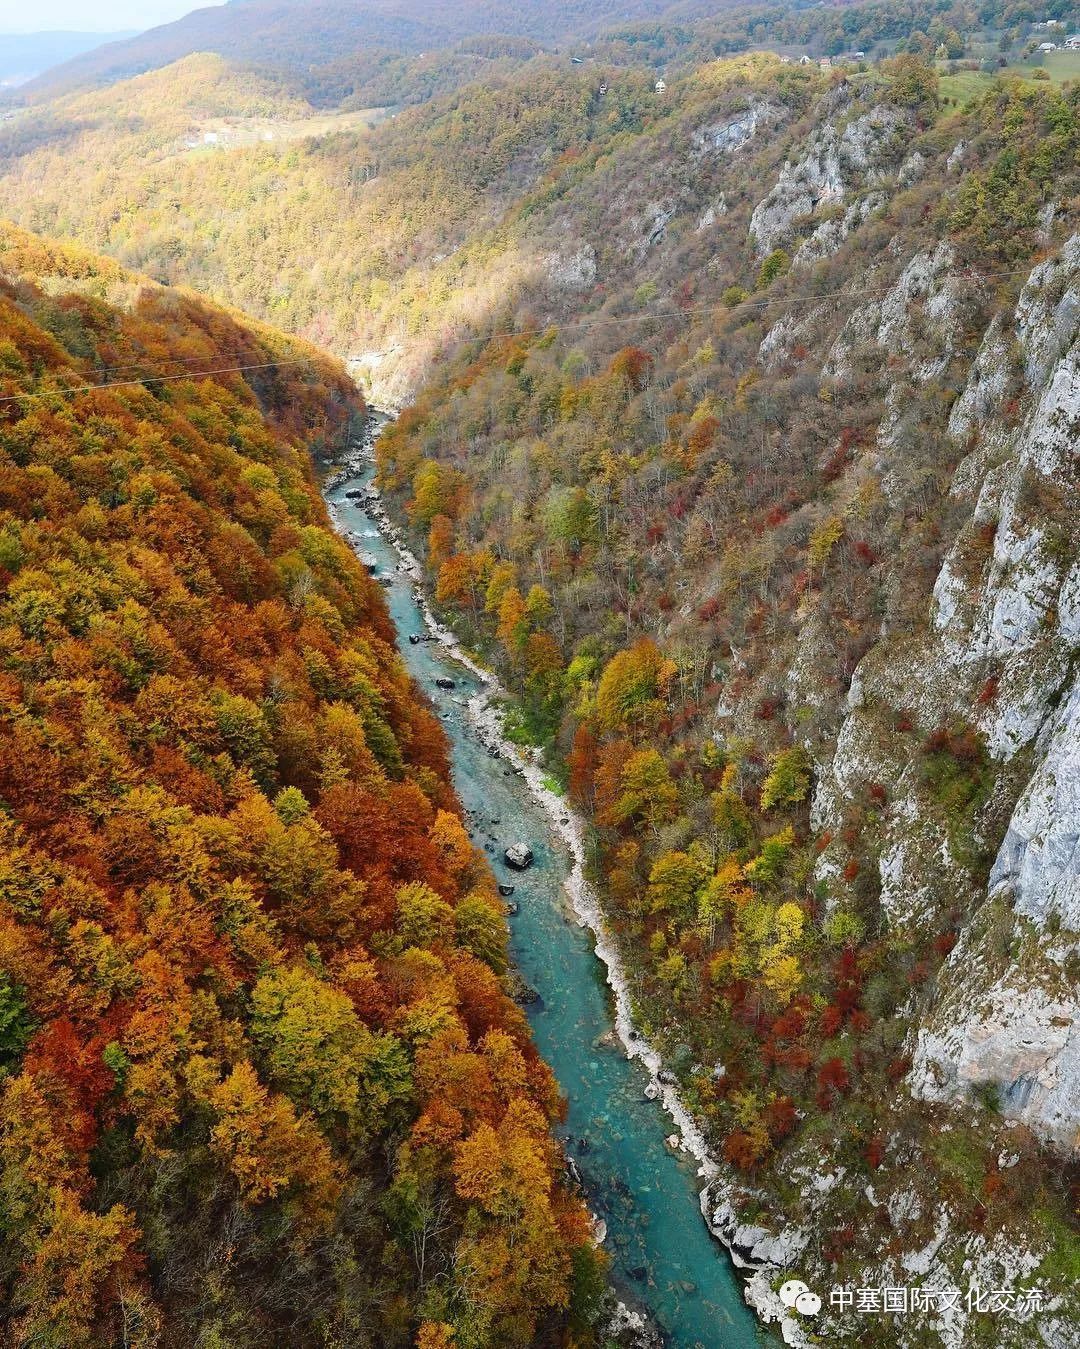 横跨塔拉峡谷,位于杜米托尔国家公园内,是黑山最受欢迎的景点之一